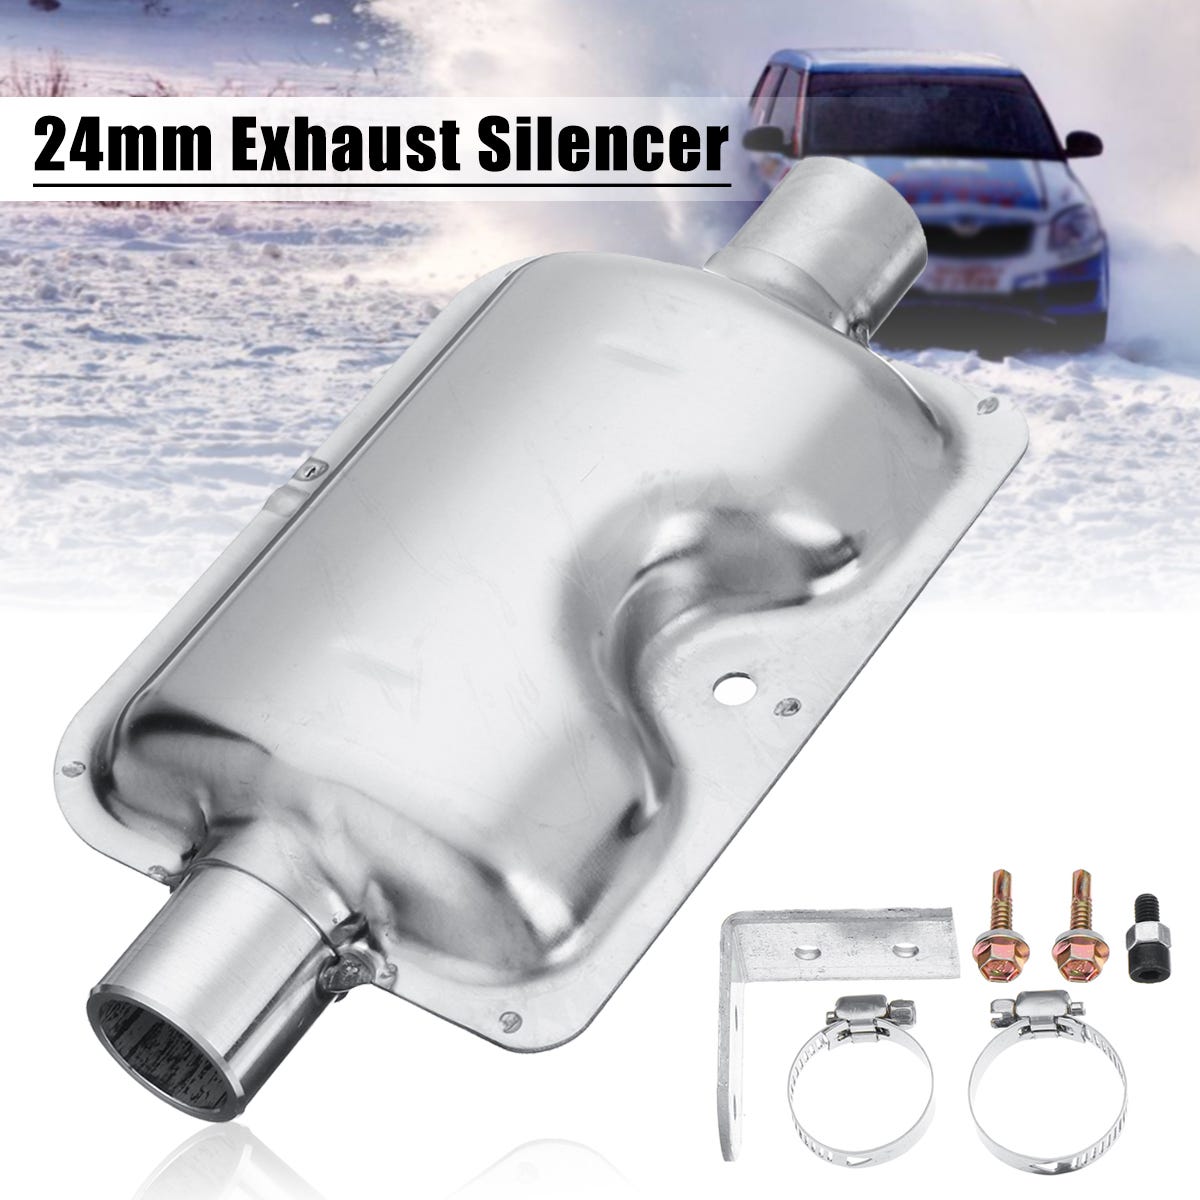 Silencieux de silencieux de tuyau d'échappement de voiture amélioré de 24  mm pour Eberspacher / webasto / chauffage diesel aérien chinois